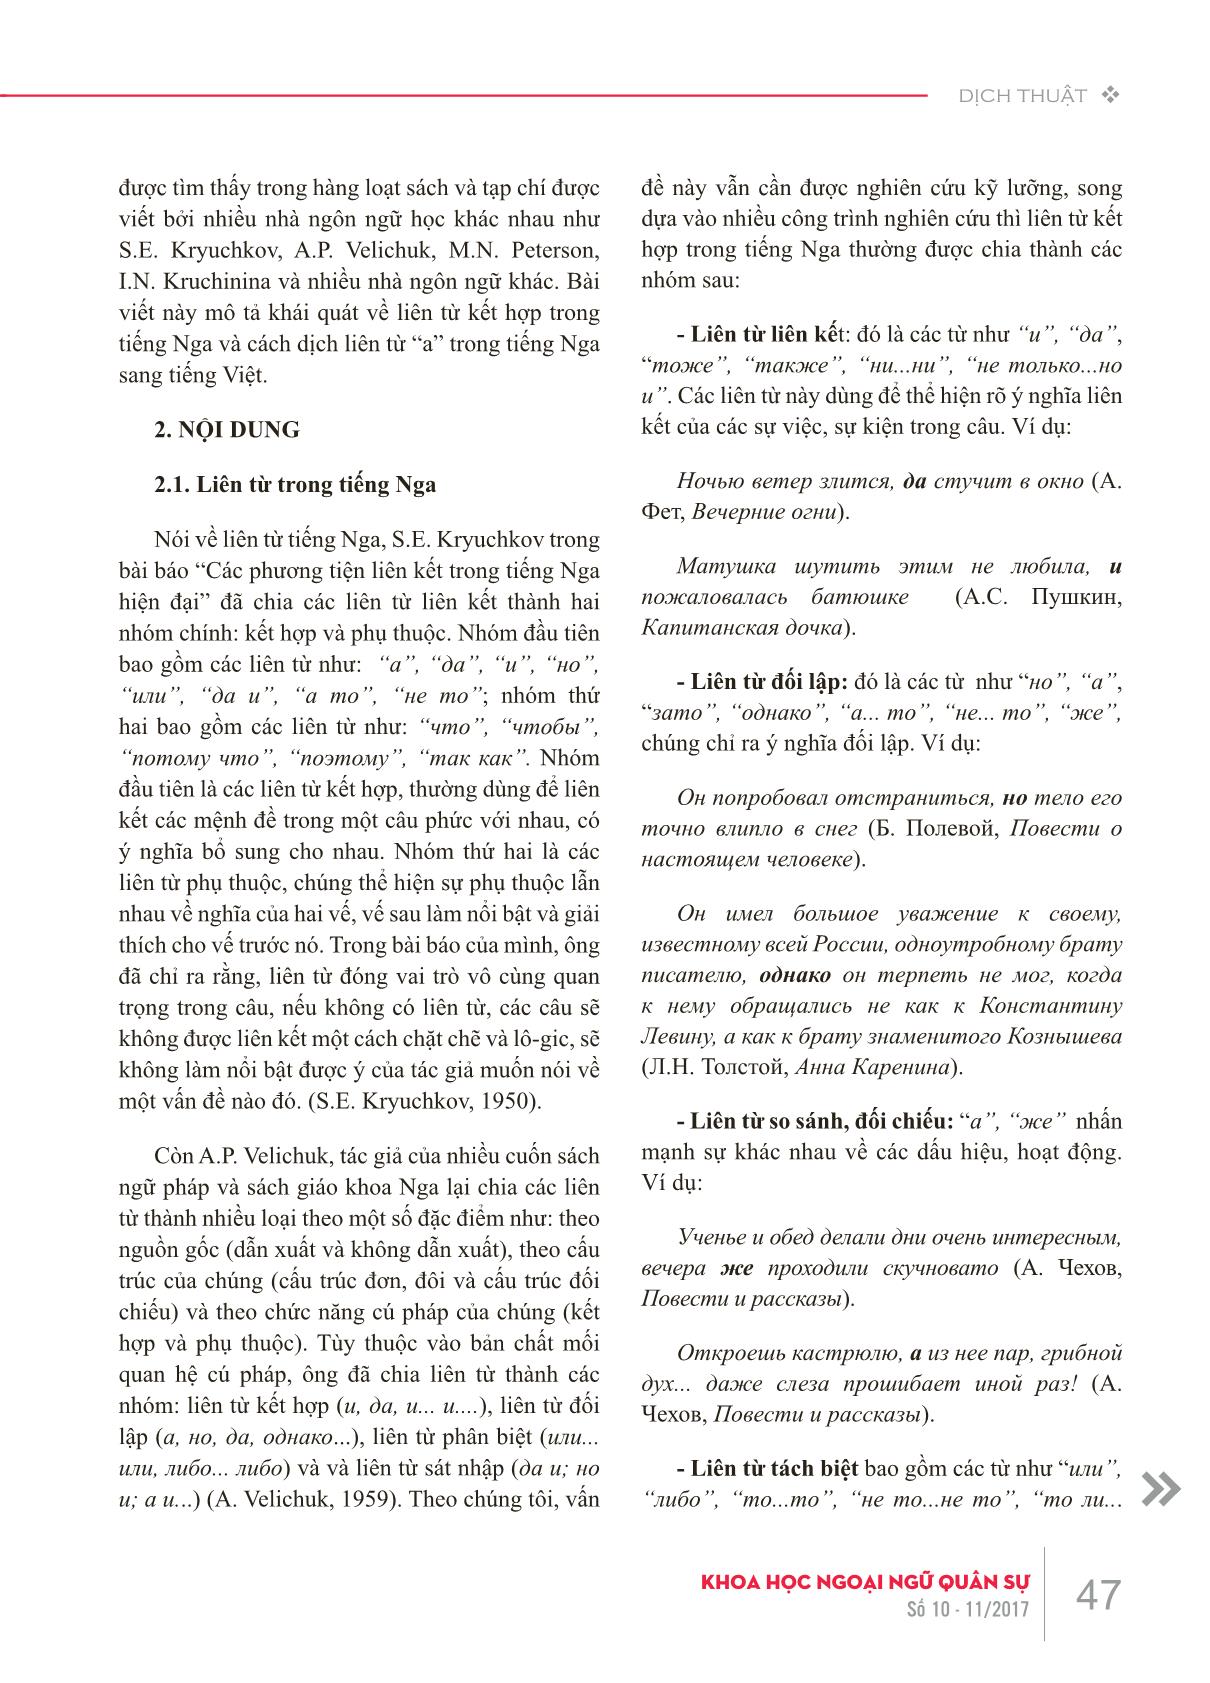 Liên từ kết hợp “a” trong tiếng Nga và các cách truyền đạt sang tiếng Việt trang 2